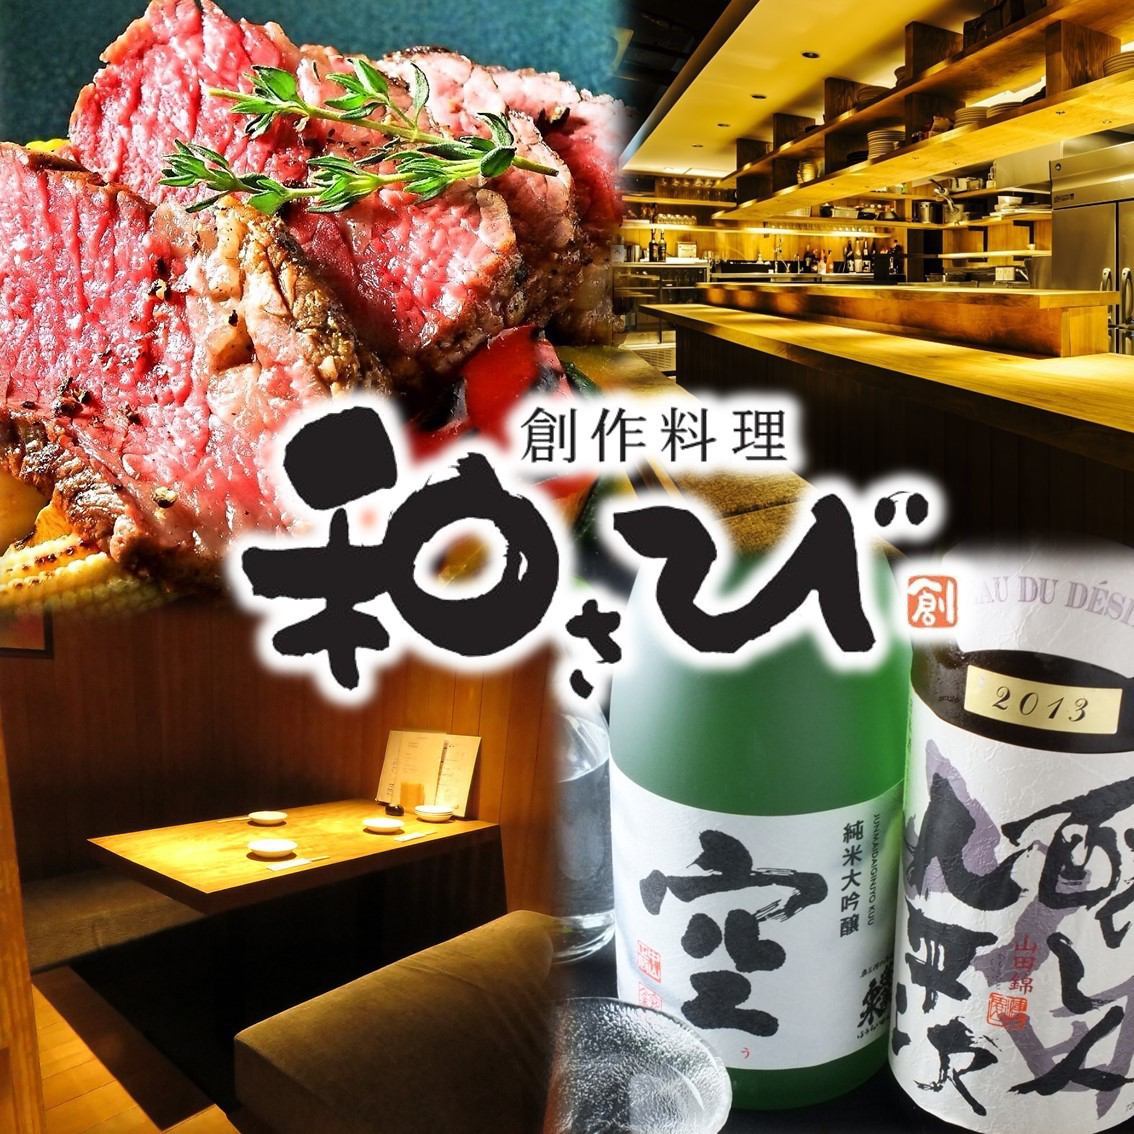 일본풍 완전 독실 ♪ 유명한 일화 녹 스위트는 그대로 나고야 밥의 창작 요리를 즐길!